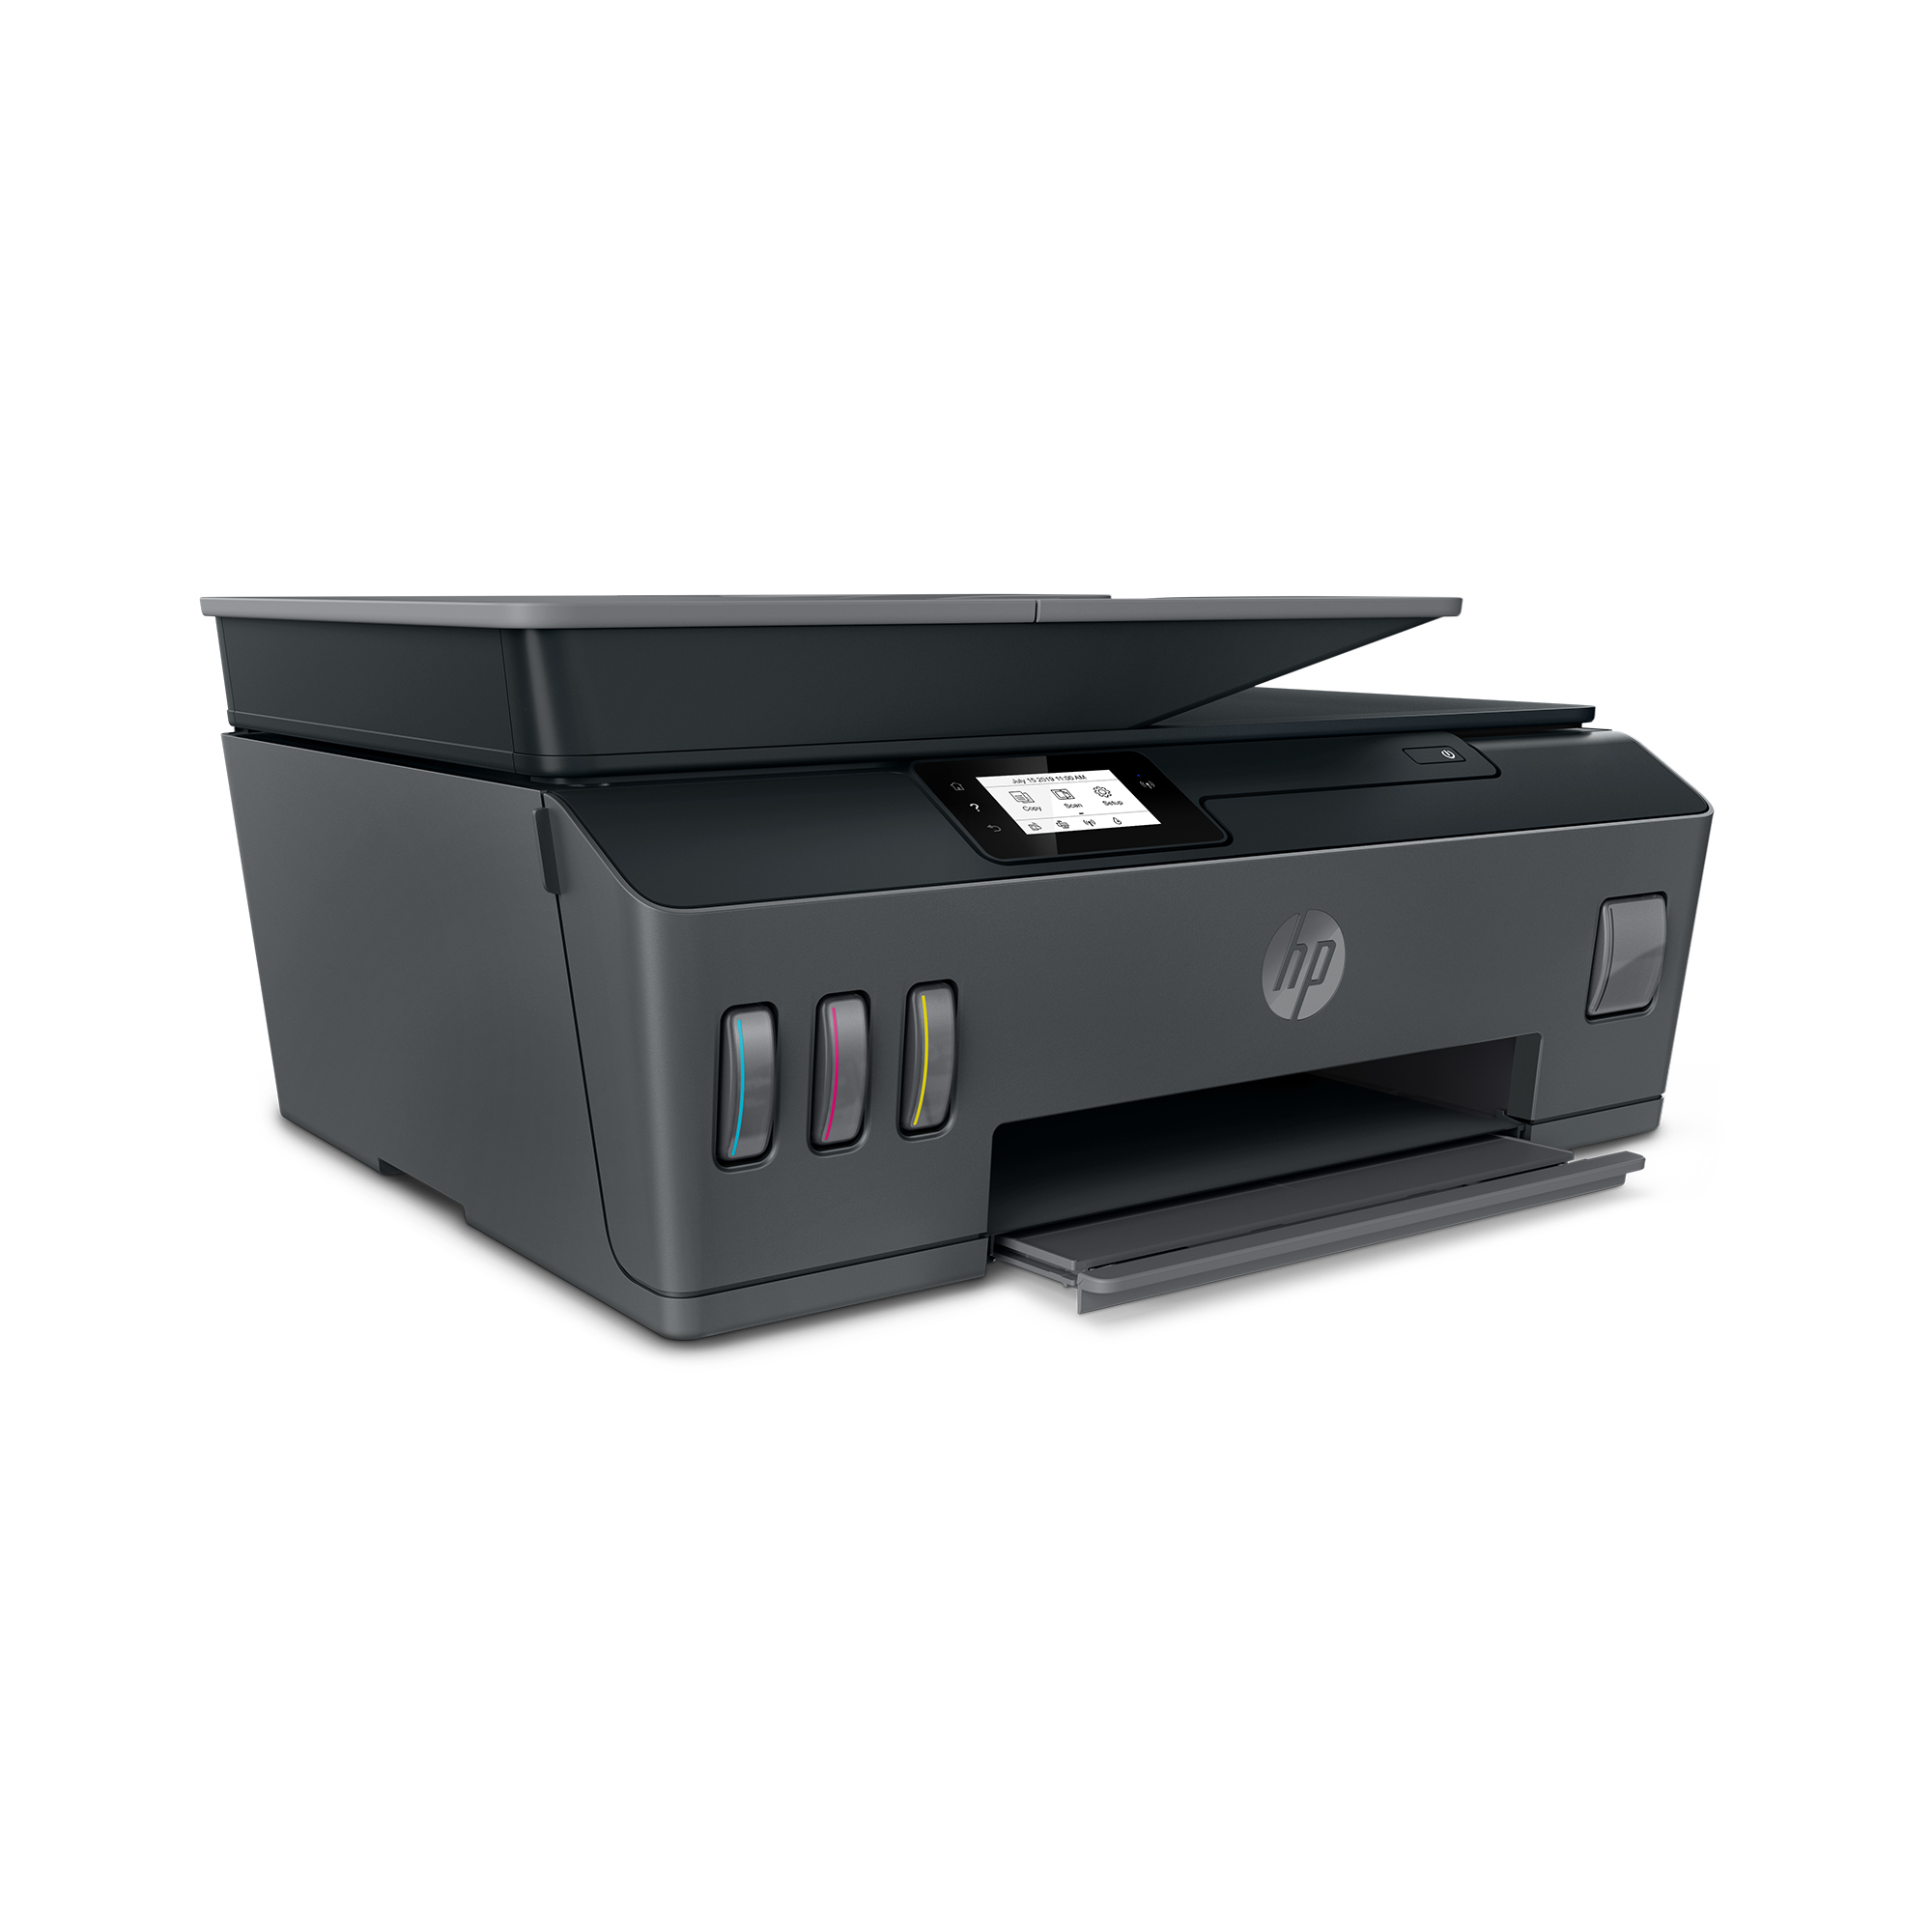 HP Smart Tank Plus 570 Wireless All-in-One - Multifunktionsdrucke